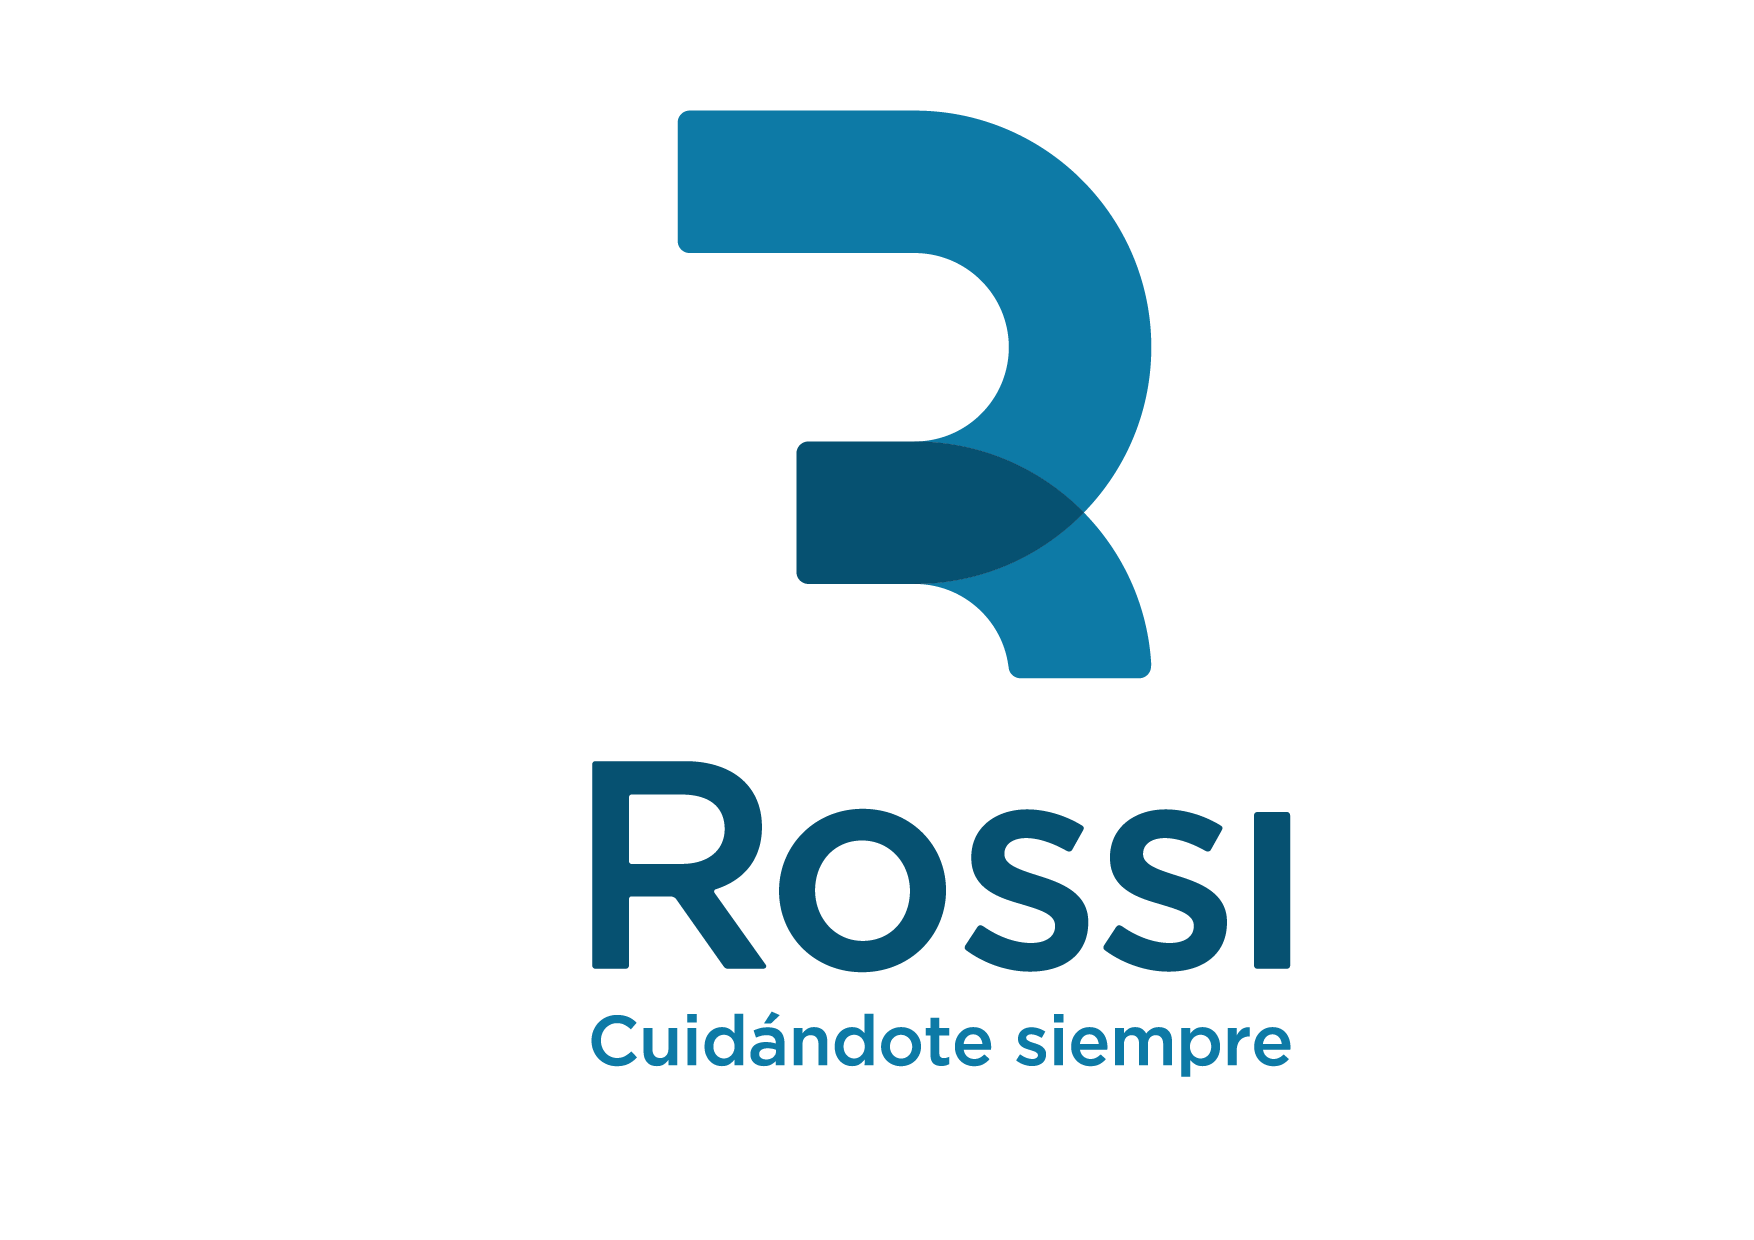 Centro Rossi - Estudios diagnósticos de apnea del sueño